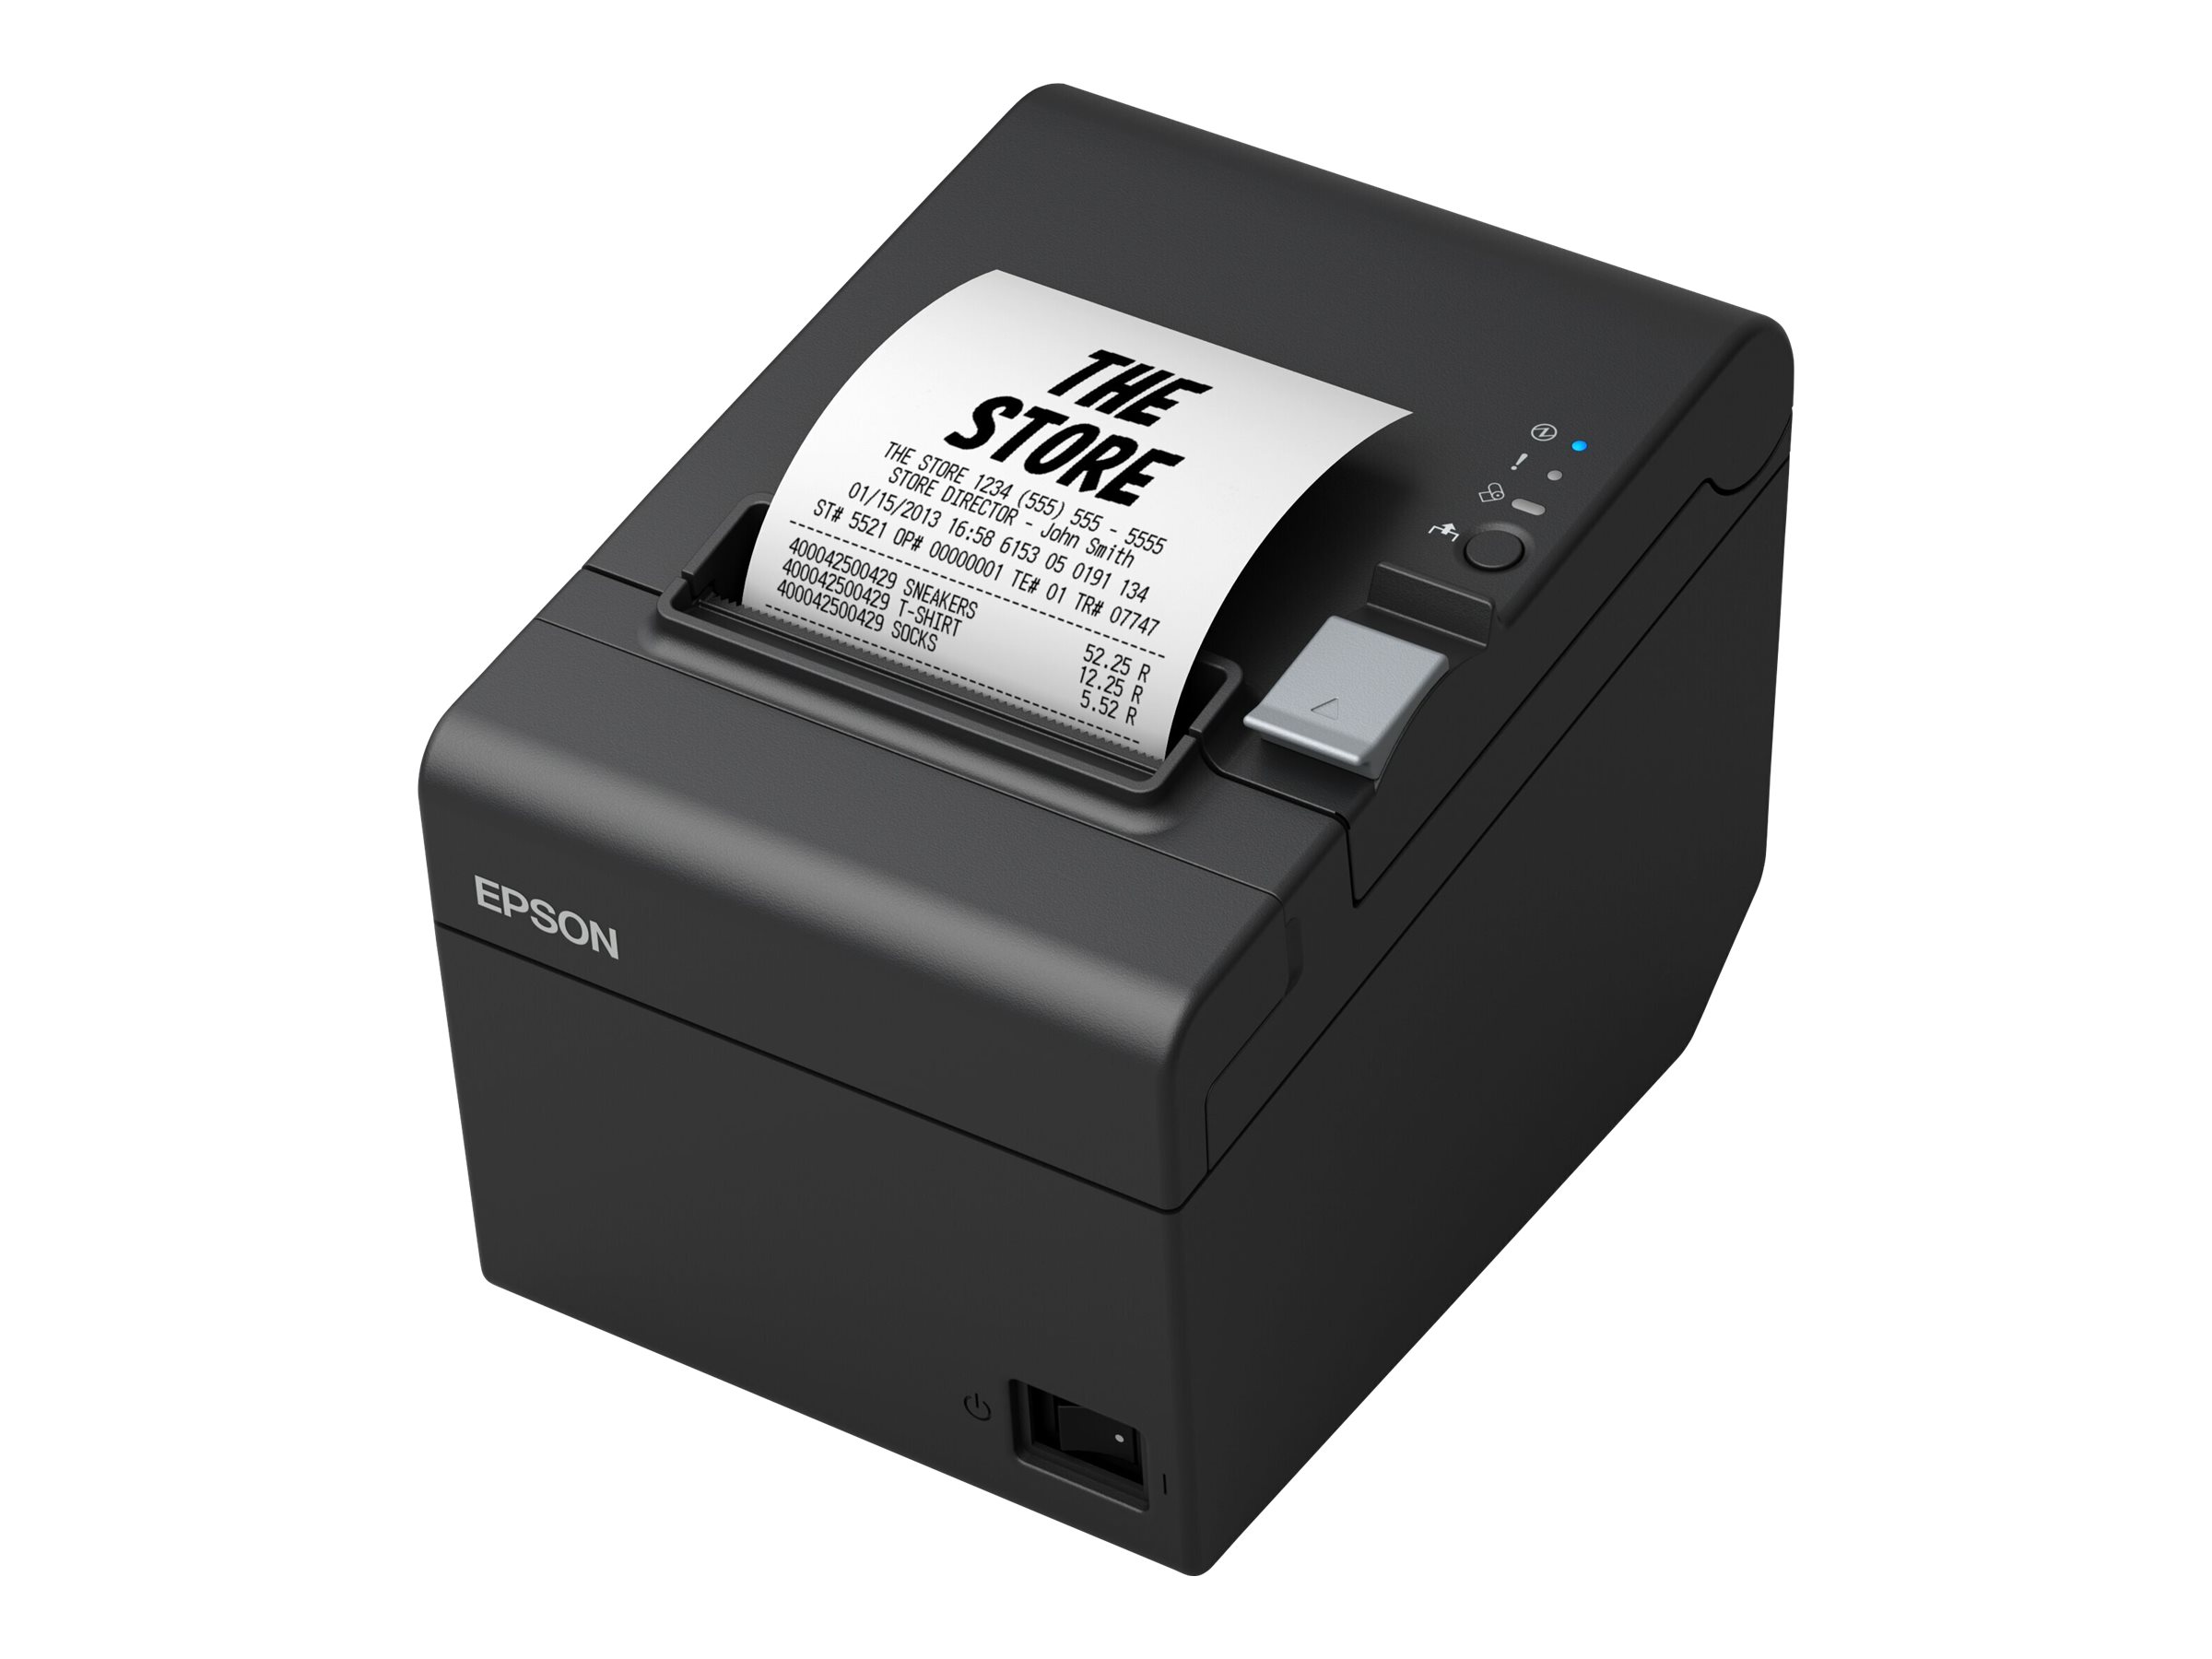 Epson TM T20III - Imprimante de reçus - thermique en ligne - Rouleau (7,95 cm) - 203 x 203 ppp - jusqu'à 250 mm/sec - USB 2.0, série - outil de coupe - noir - C31CH51011 - Imprimantes de reçus POS